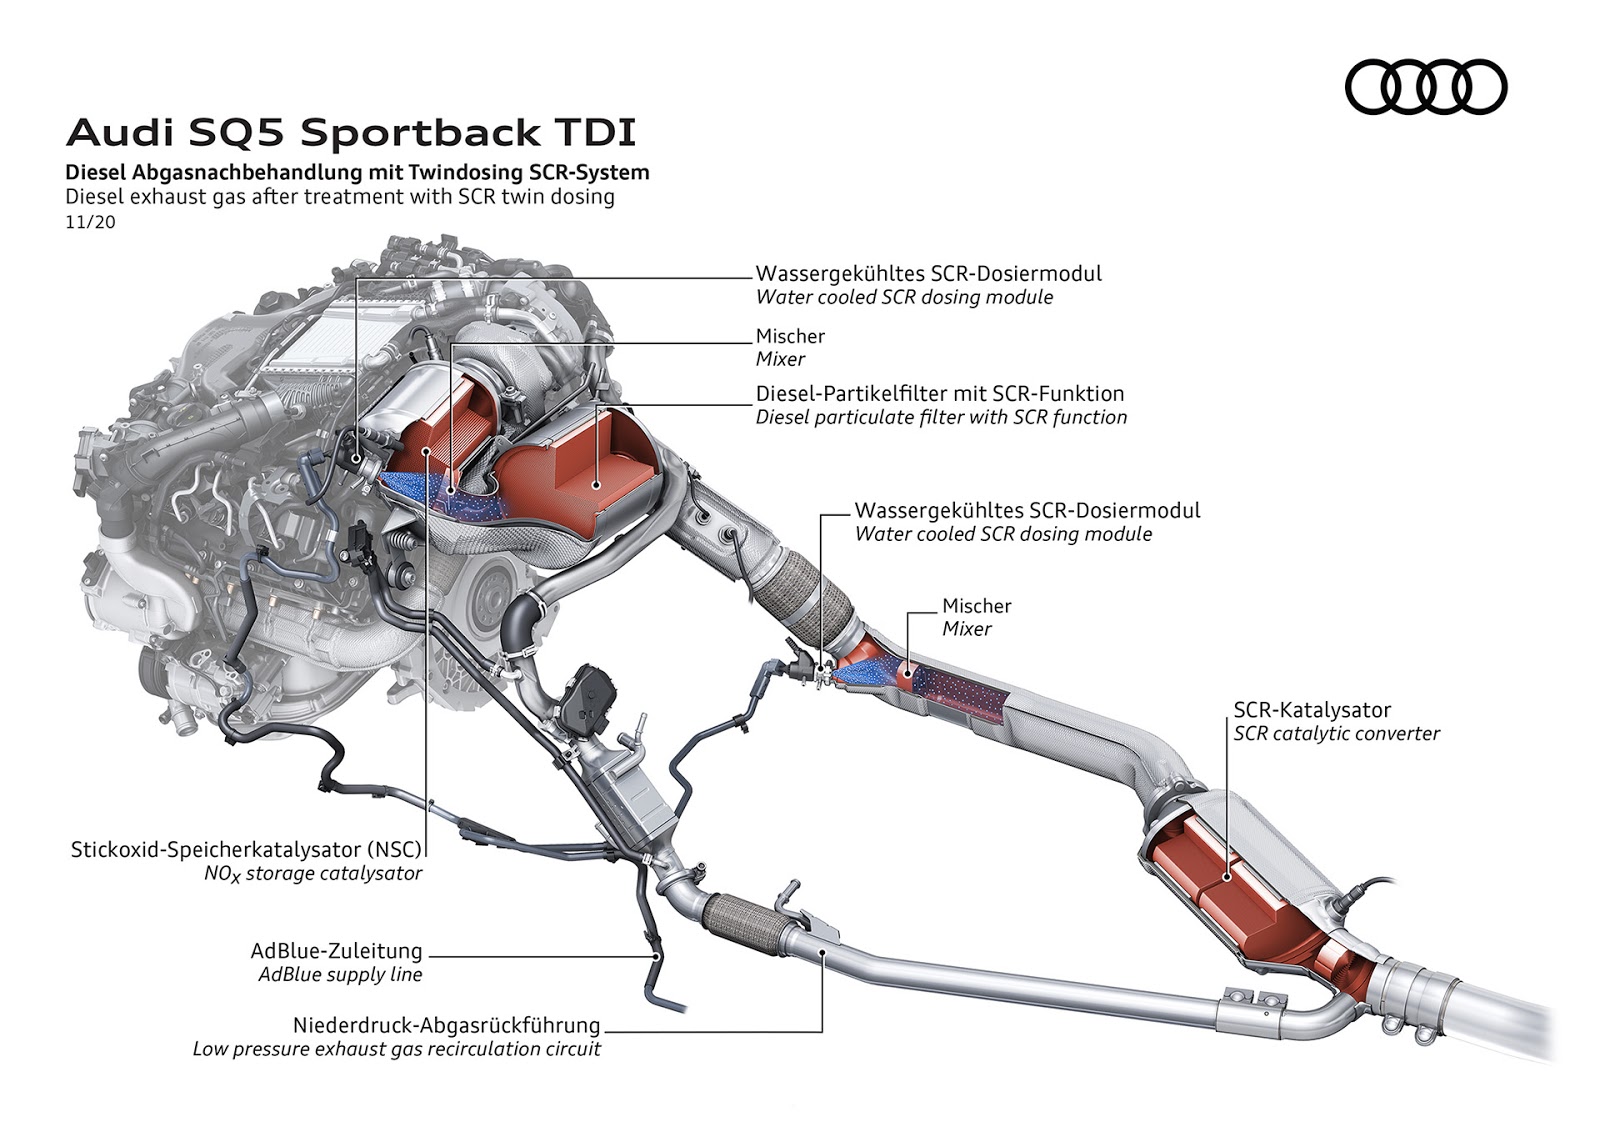 AUDI2BSQ52BSPORTBACK2BTDI 10 Audi SQ5 Sportback TDI: η σπορ έκδοση στην κορυφή της γκάμας του μοντέλου